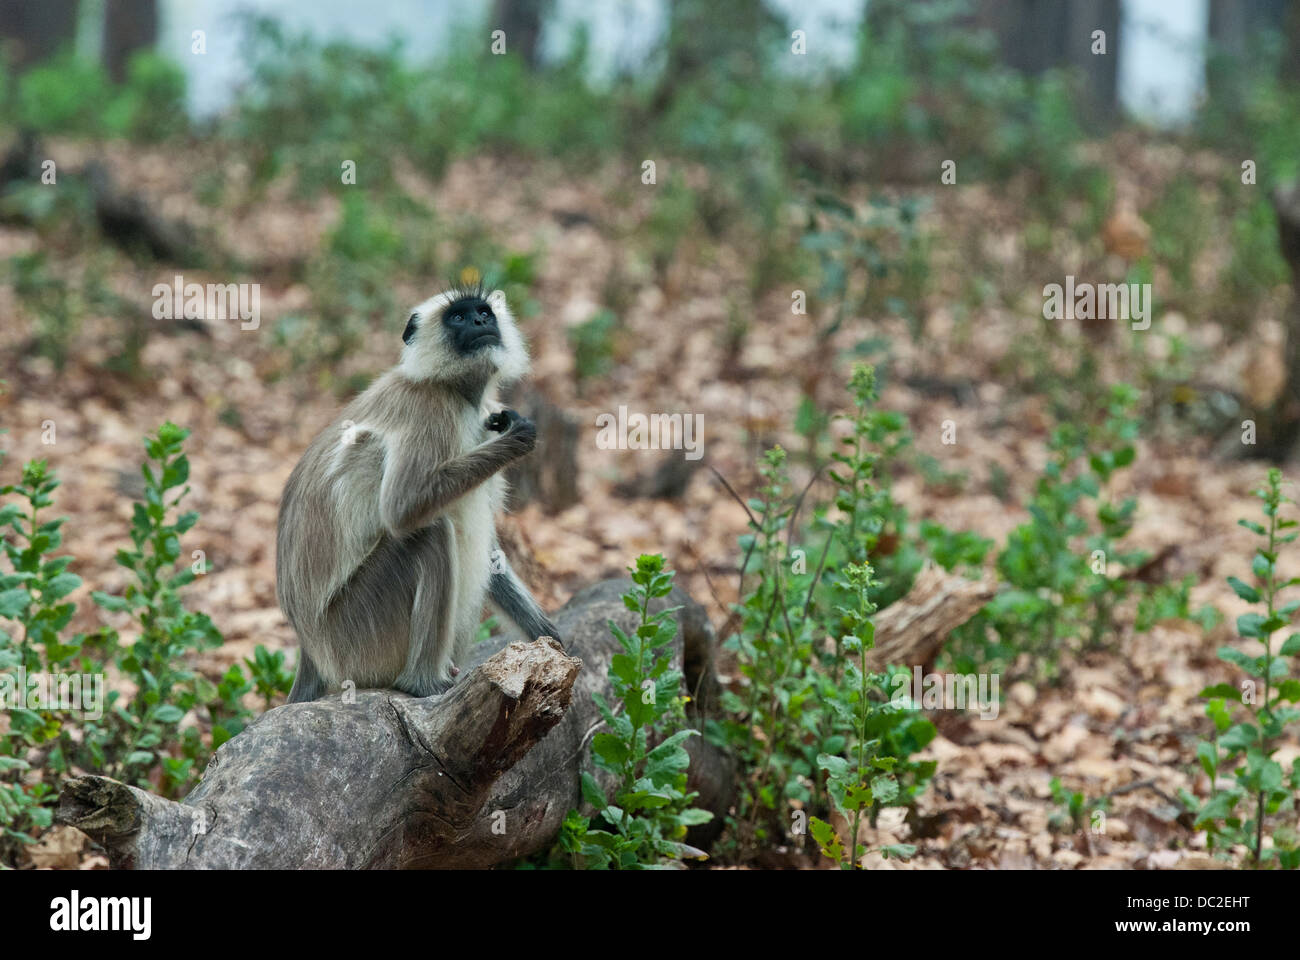 Black-faced Langur monkey sitting on a log dans Bandhavgarh National Park, Inde Banque D'Images